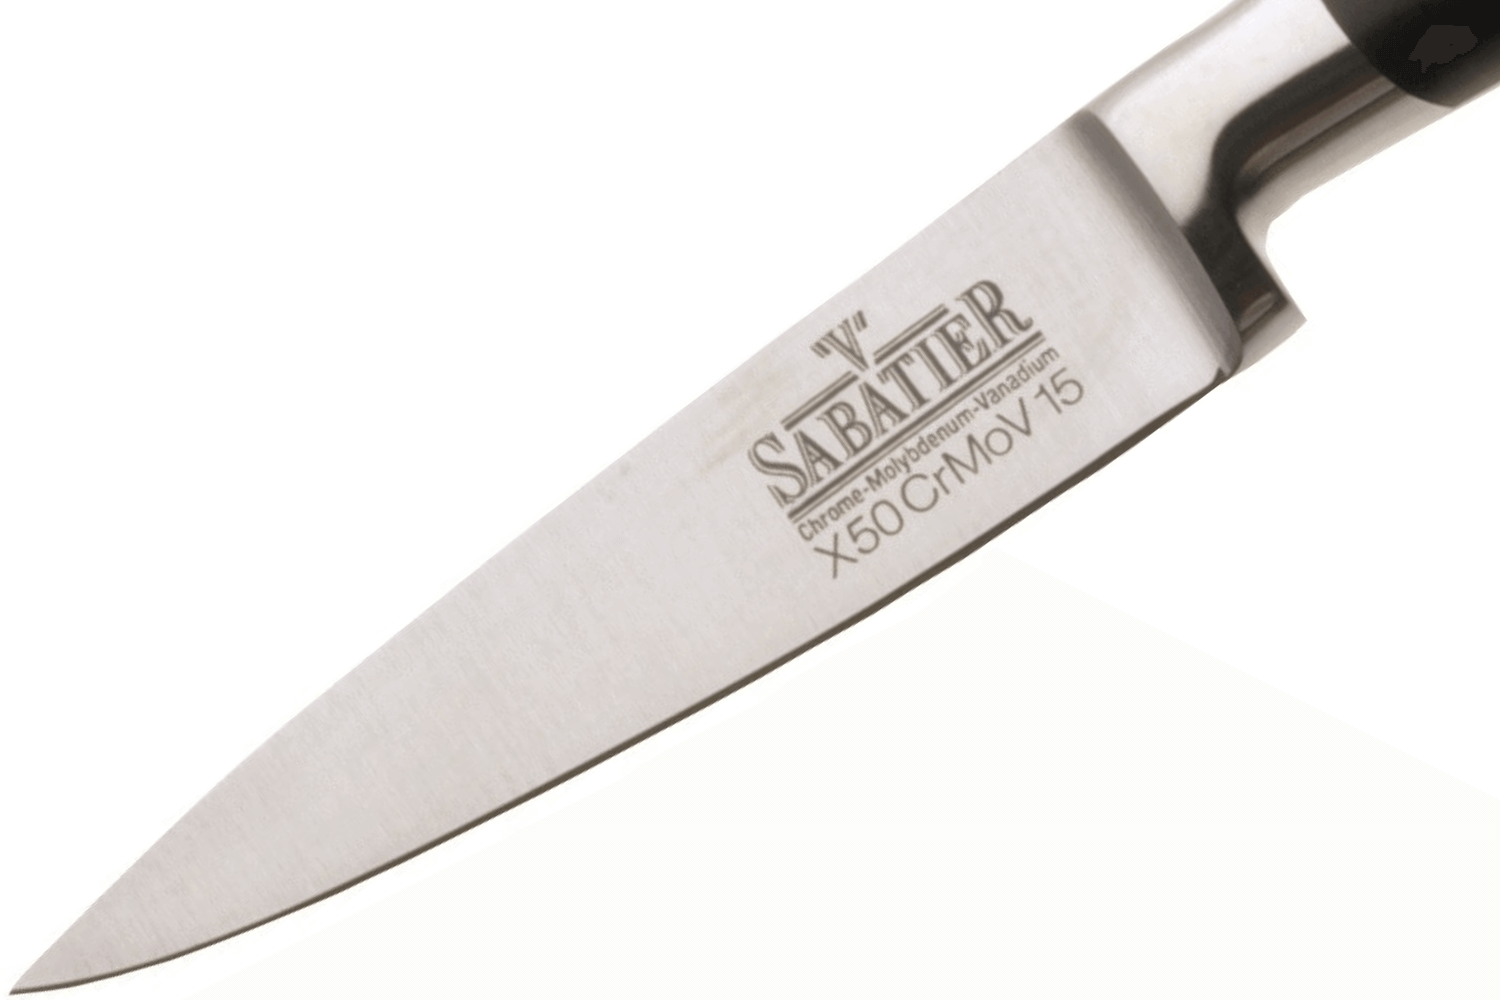 Couteau éplucheur Nova 85 mm, idéal pour éplucher les fruits et